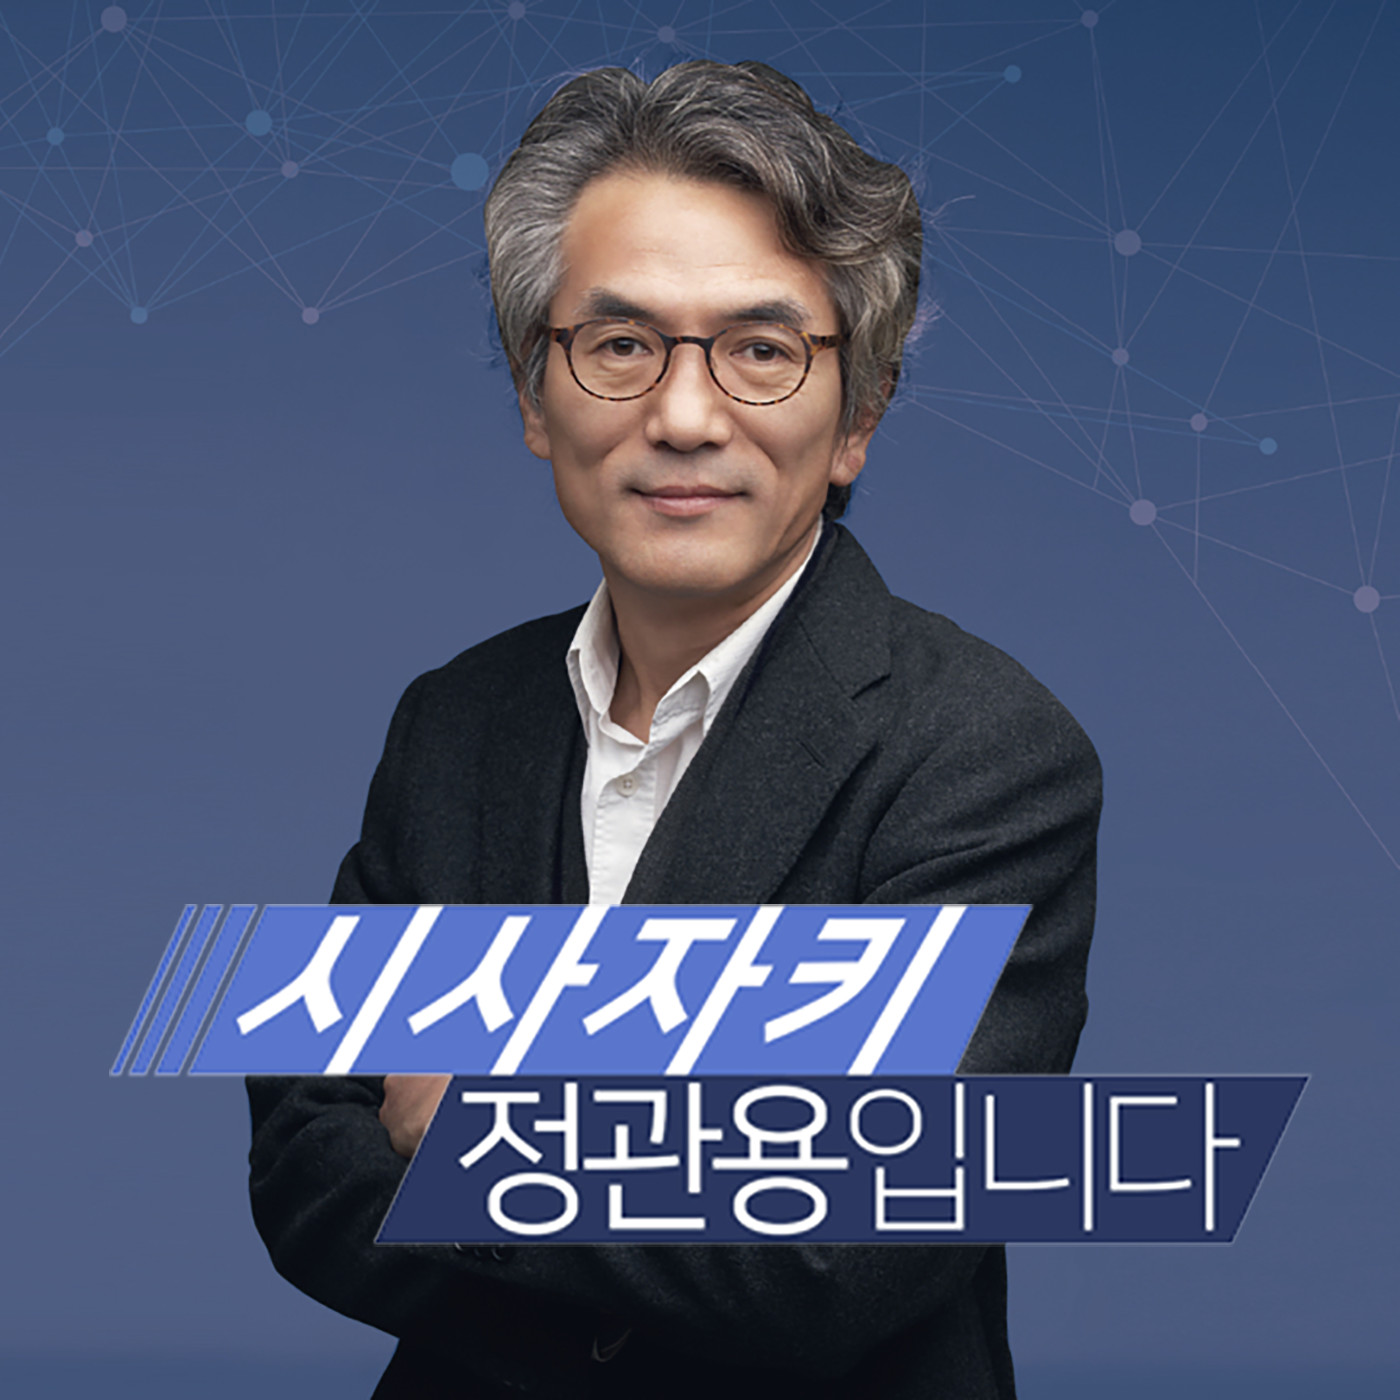 [20/02/14] 장기표 "변화와 혁신 없는 한국당, 절망스러워" - 장기표 국민의소리 대표